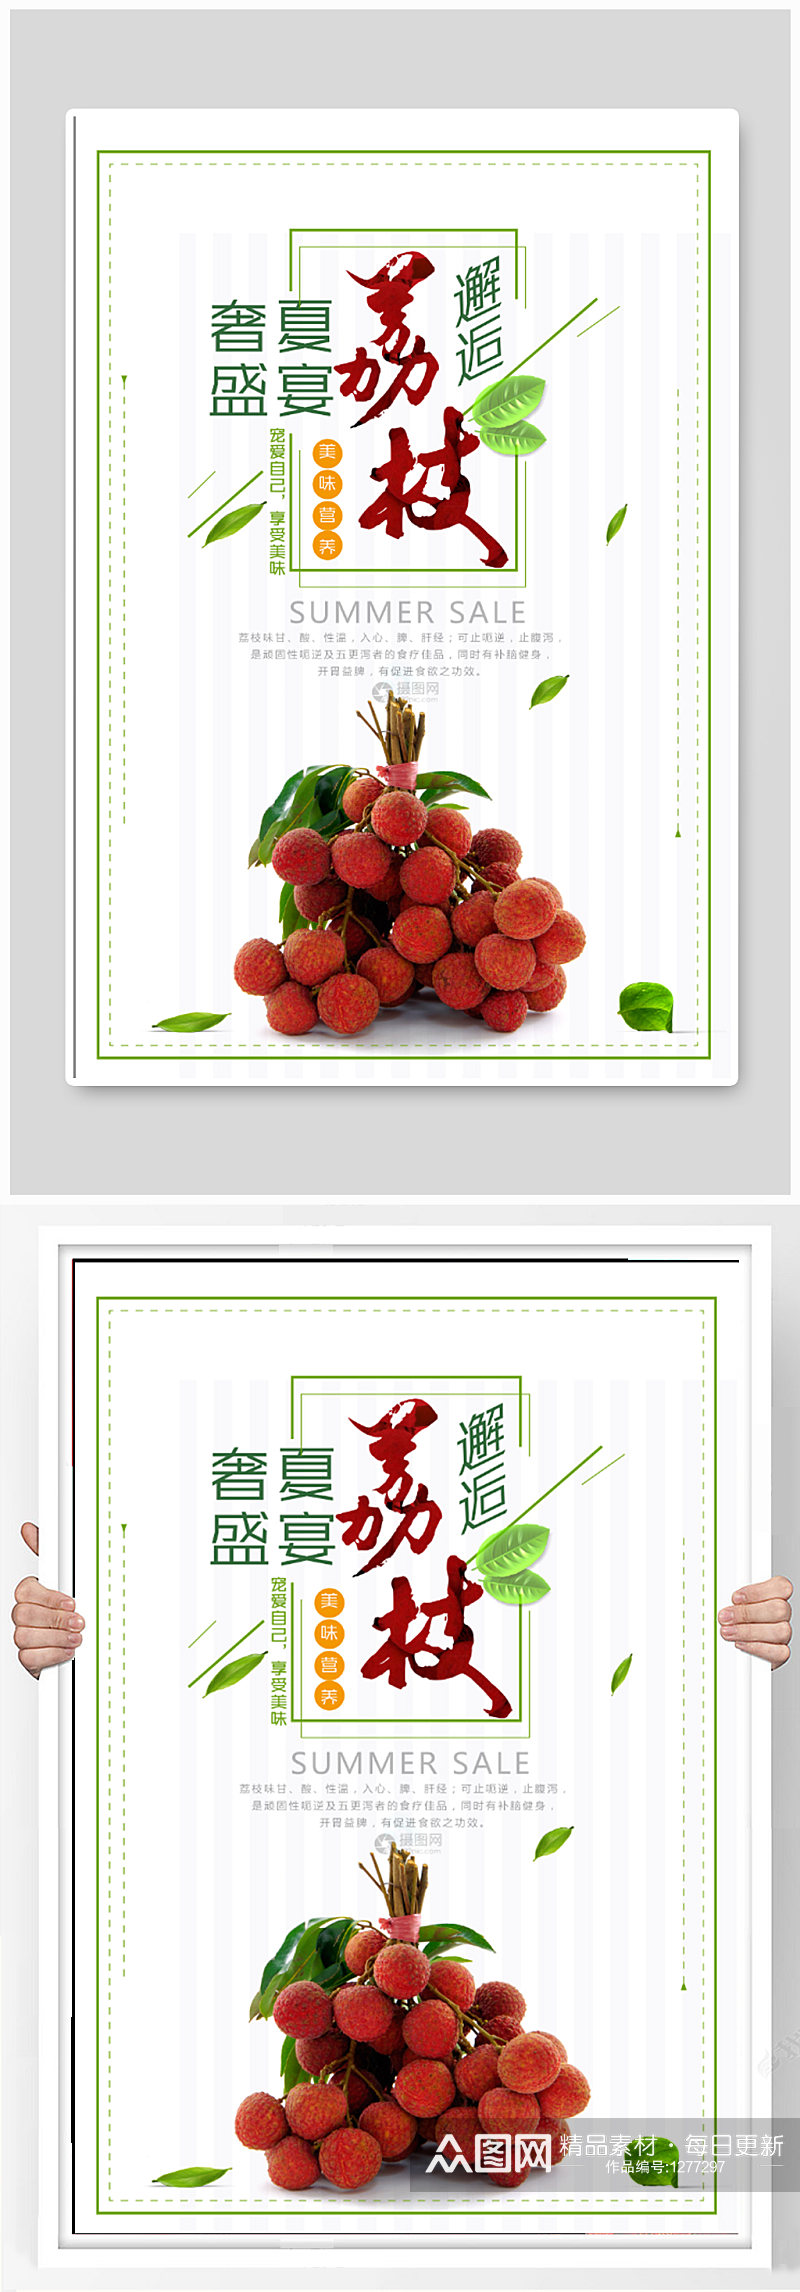 荔枝水果店促销海报素材